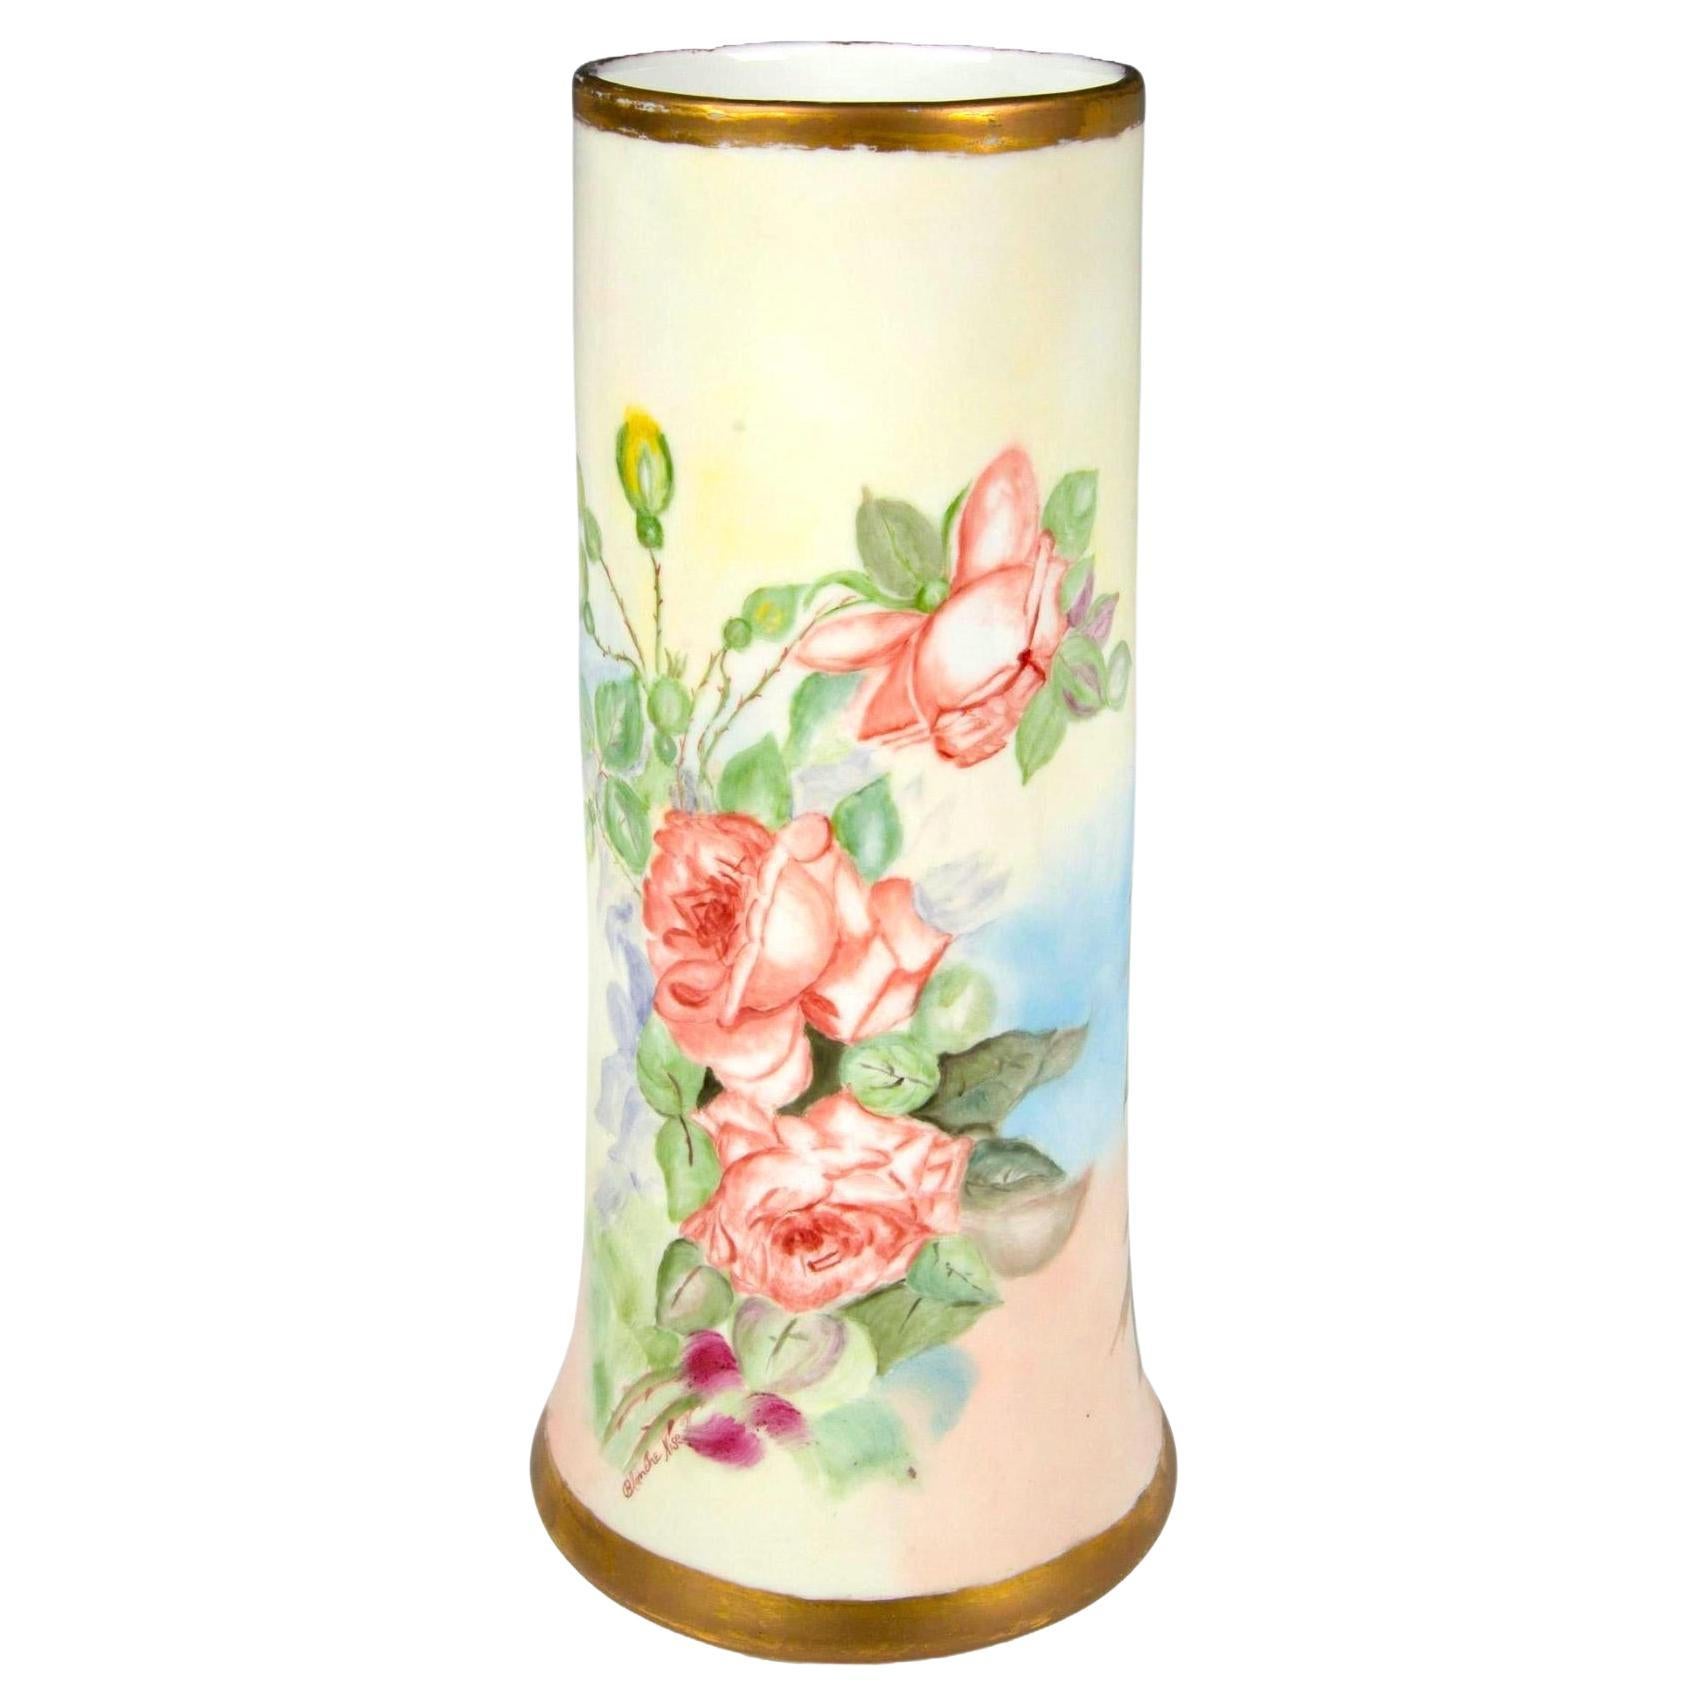 Voici un magnifique vase antique en porcelaine de Limoges, France, fabriqué par C.I.C. et peint à la main avec des motifs floraux complexes. Ce grand vase présente un luxuriant arrangement de roses peintes à la main, mis en valeur par de délicates